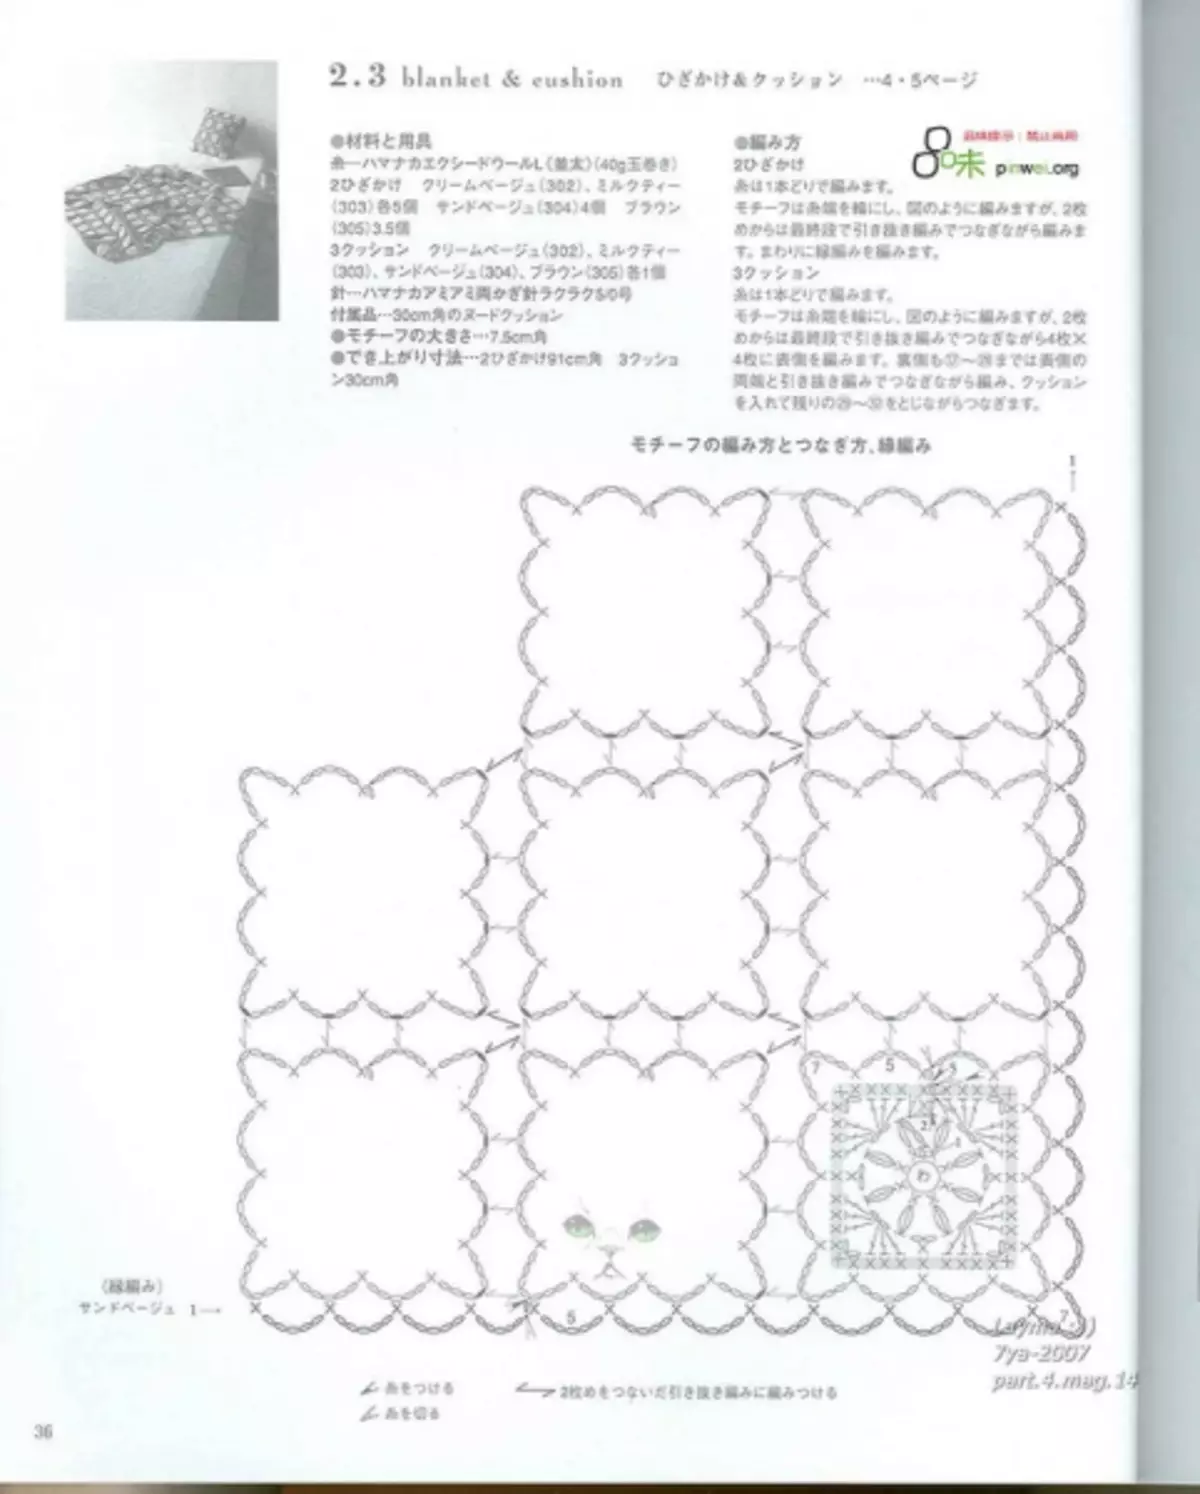 Կռունկ: Japanese ապոնական ամսագիր